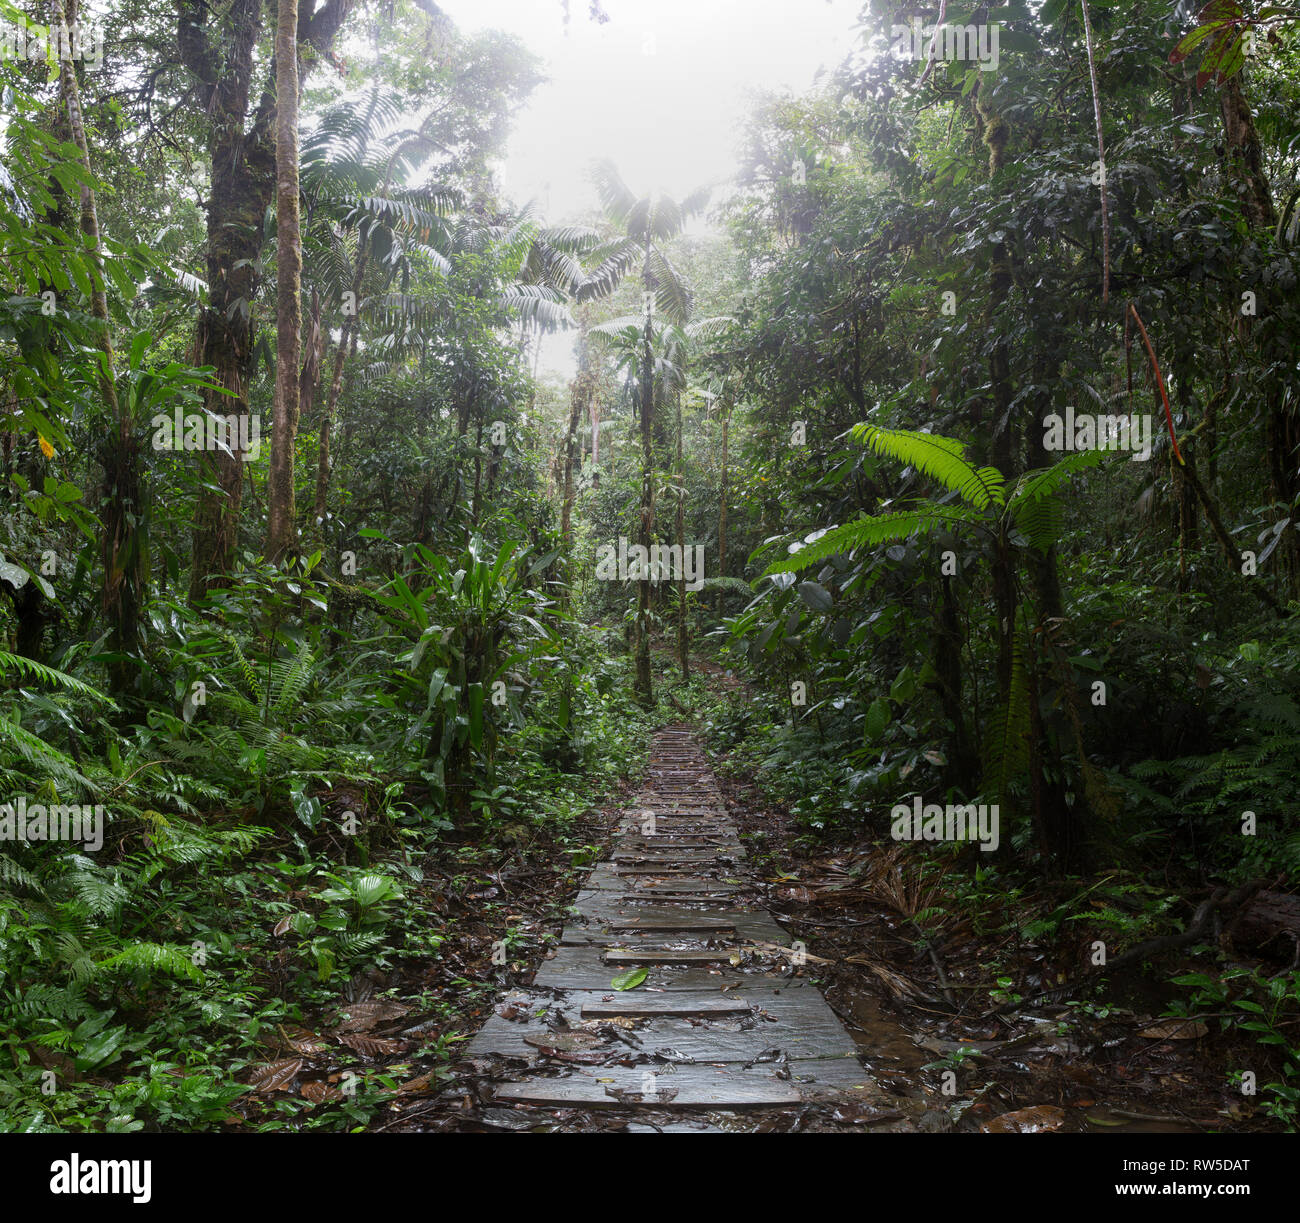 jungle trail in the amazon rain forest Stock Photo